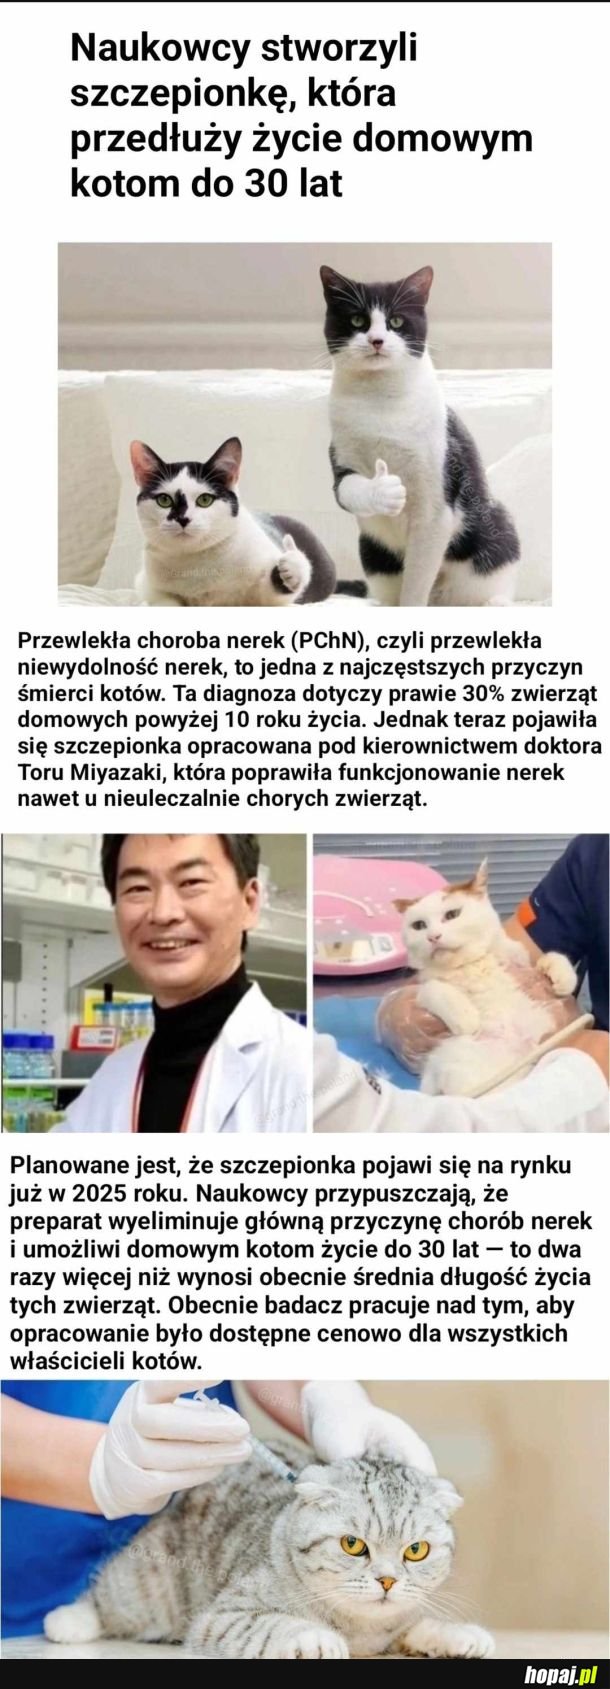 Szczepionka, która ma przedłużyć kotom życie